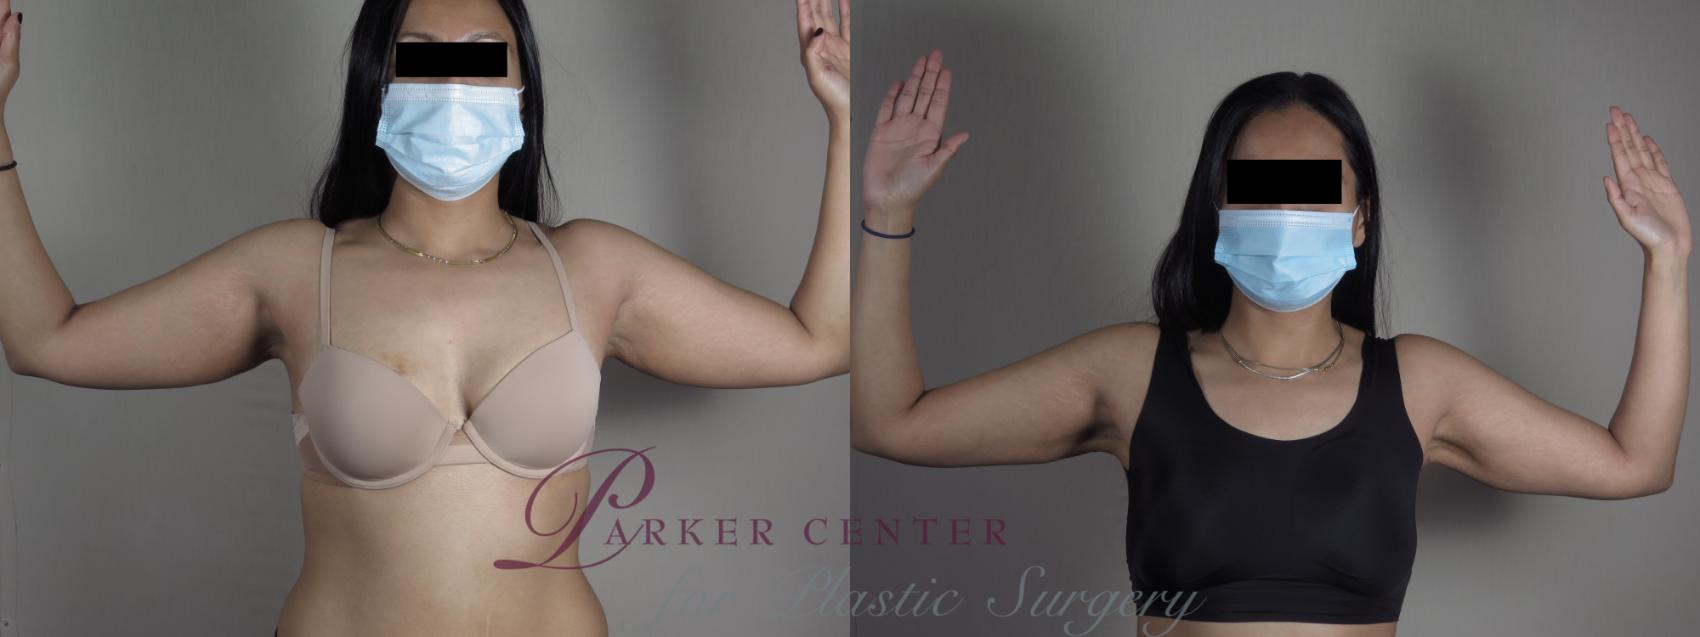 Upper Arm Rejuvenation Case 1198 Before & After View #1  | Paramus, NJ | Parker Center for Plastic Surgery